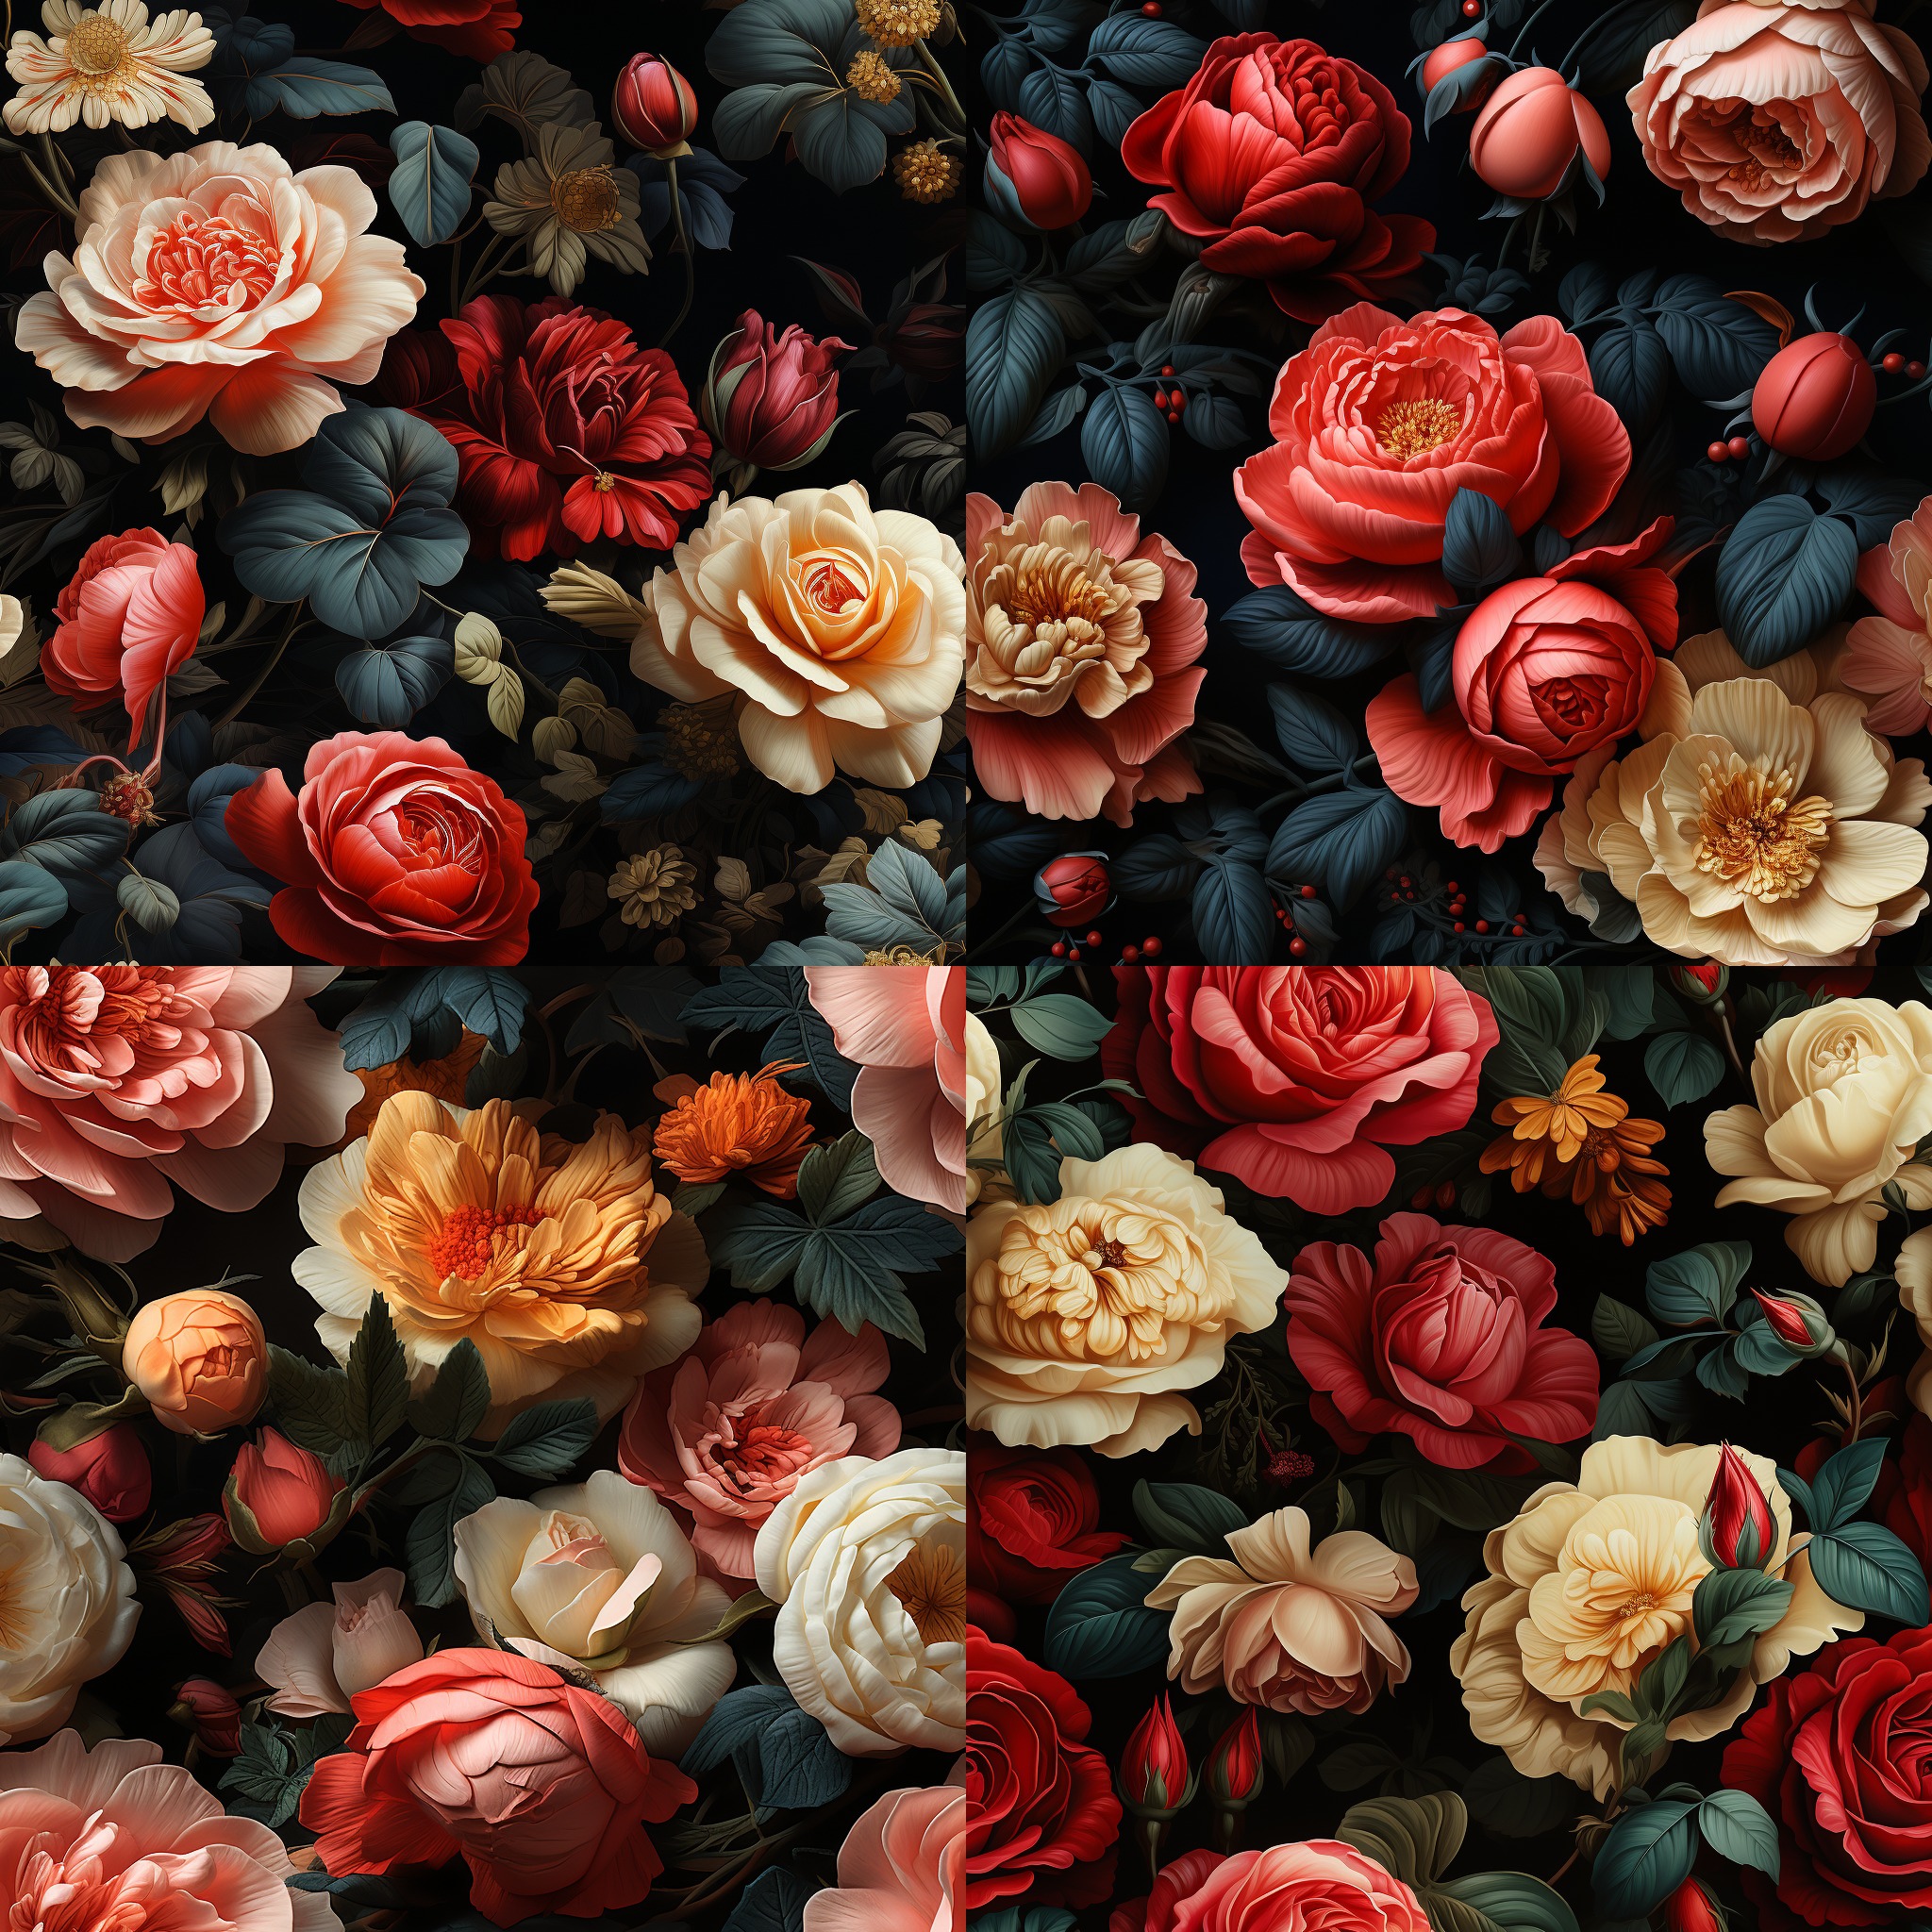 many english roses on black background